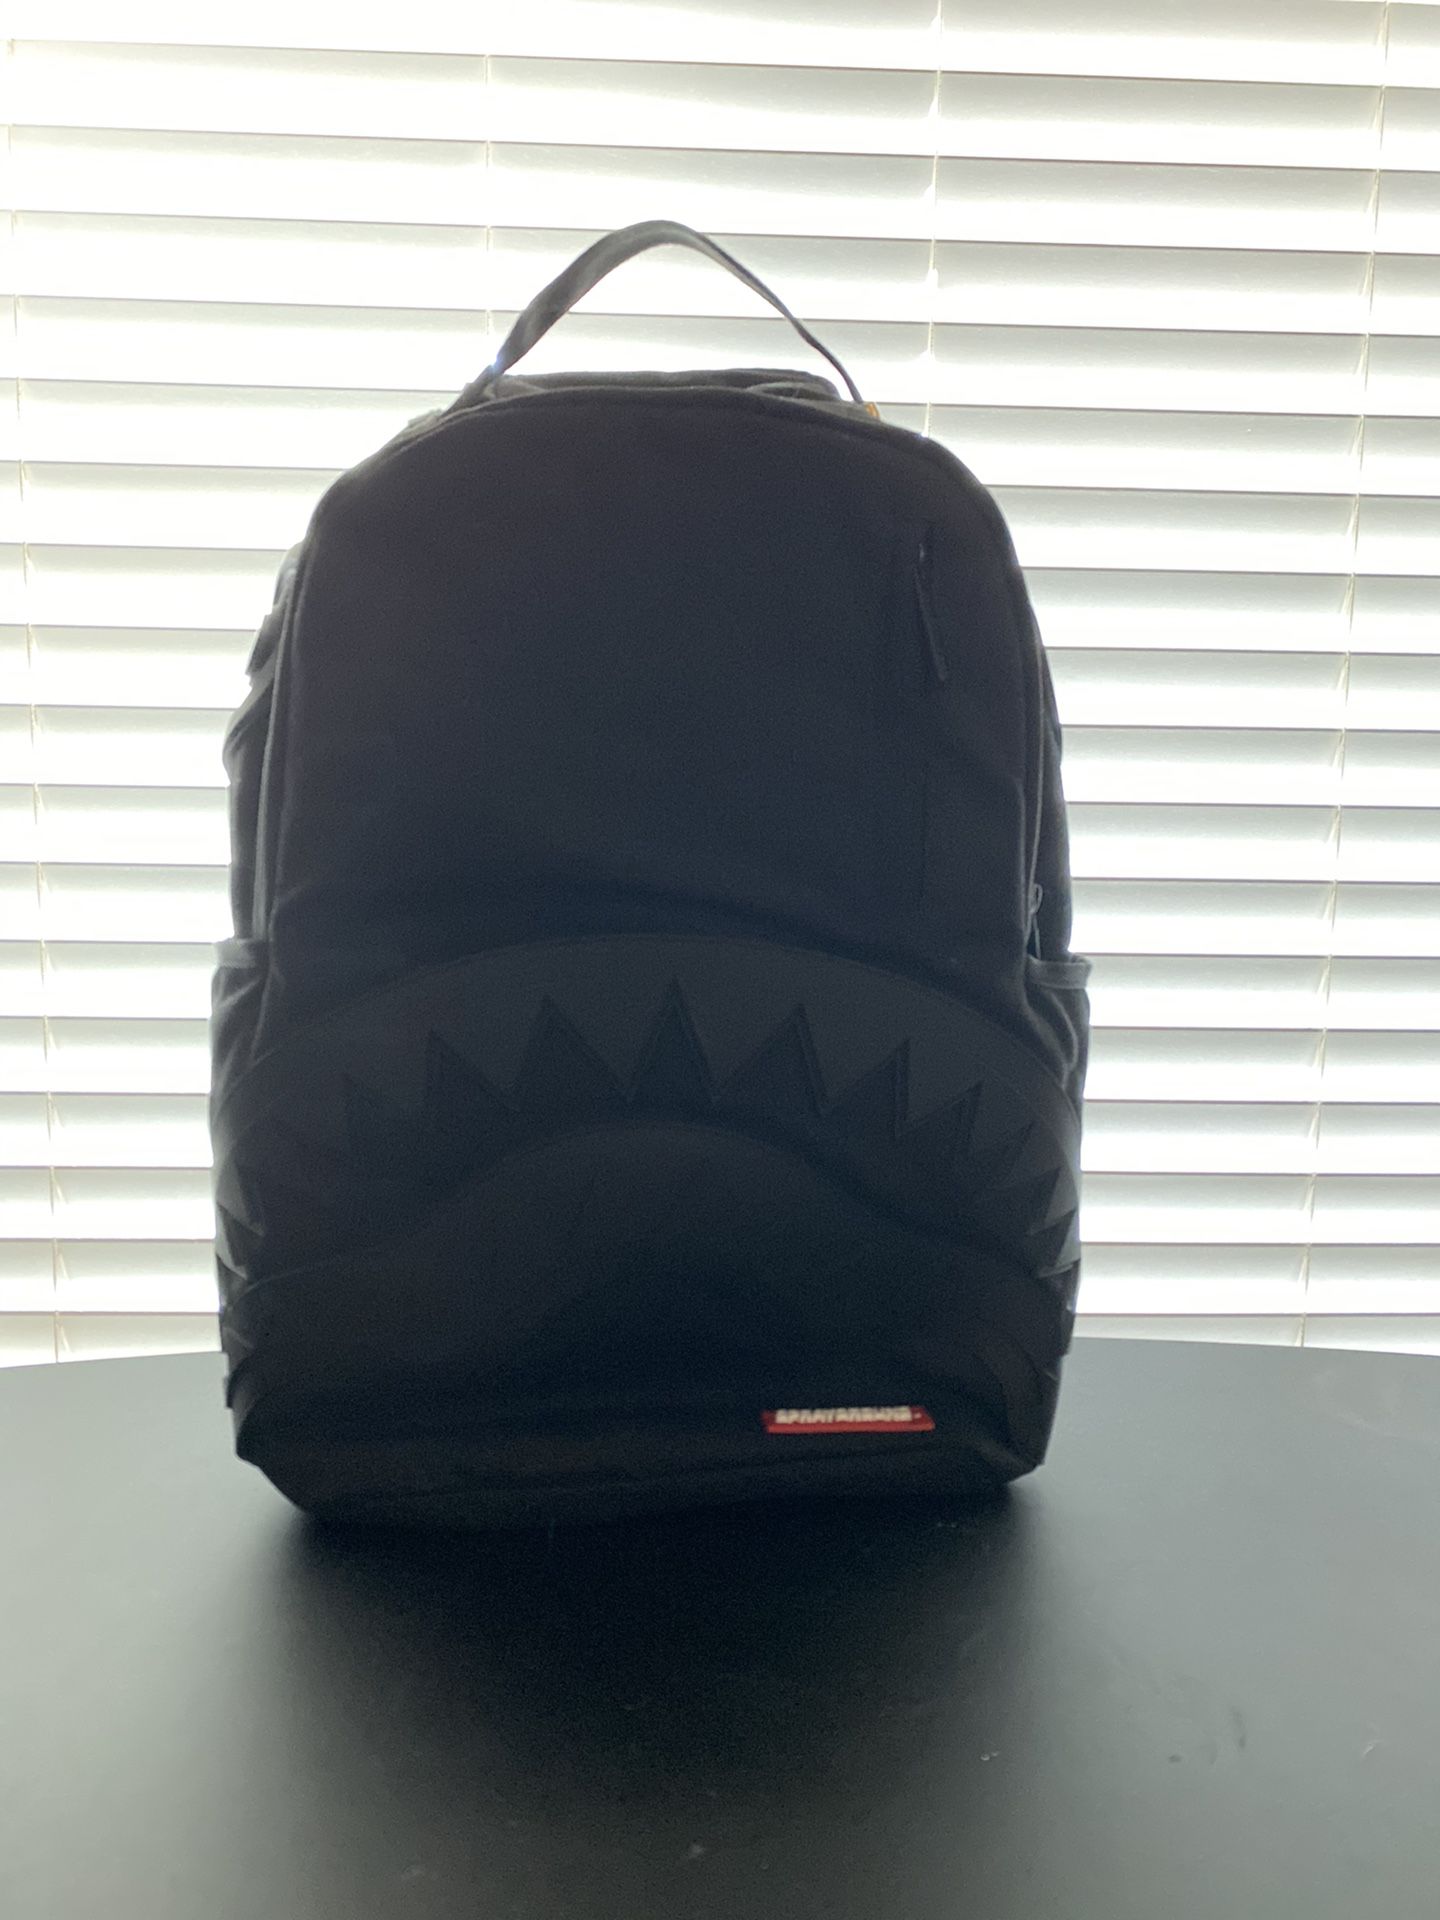 Rubber shark backpack